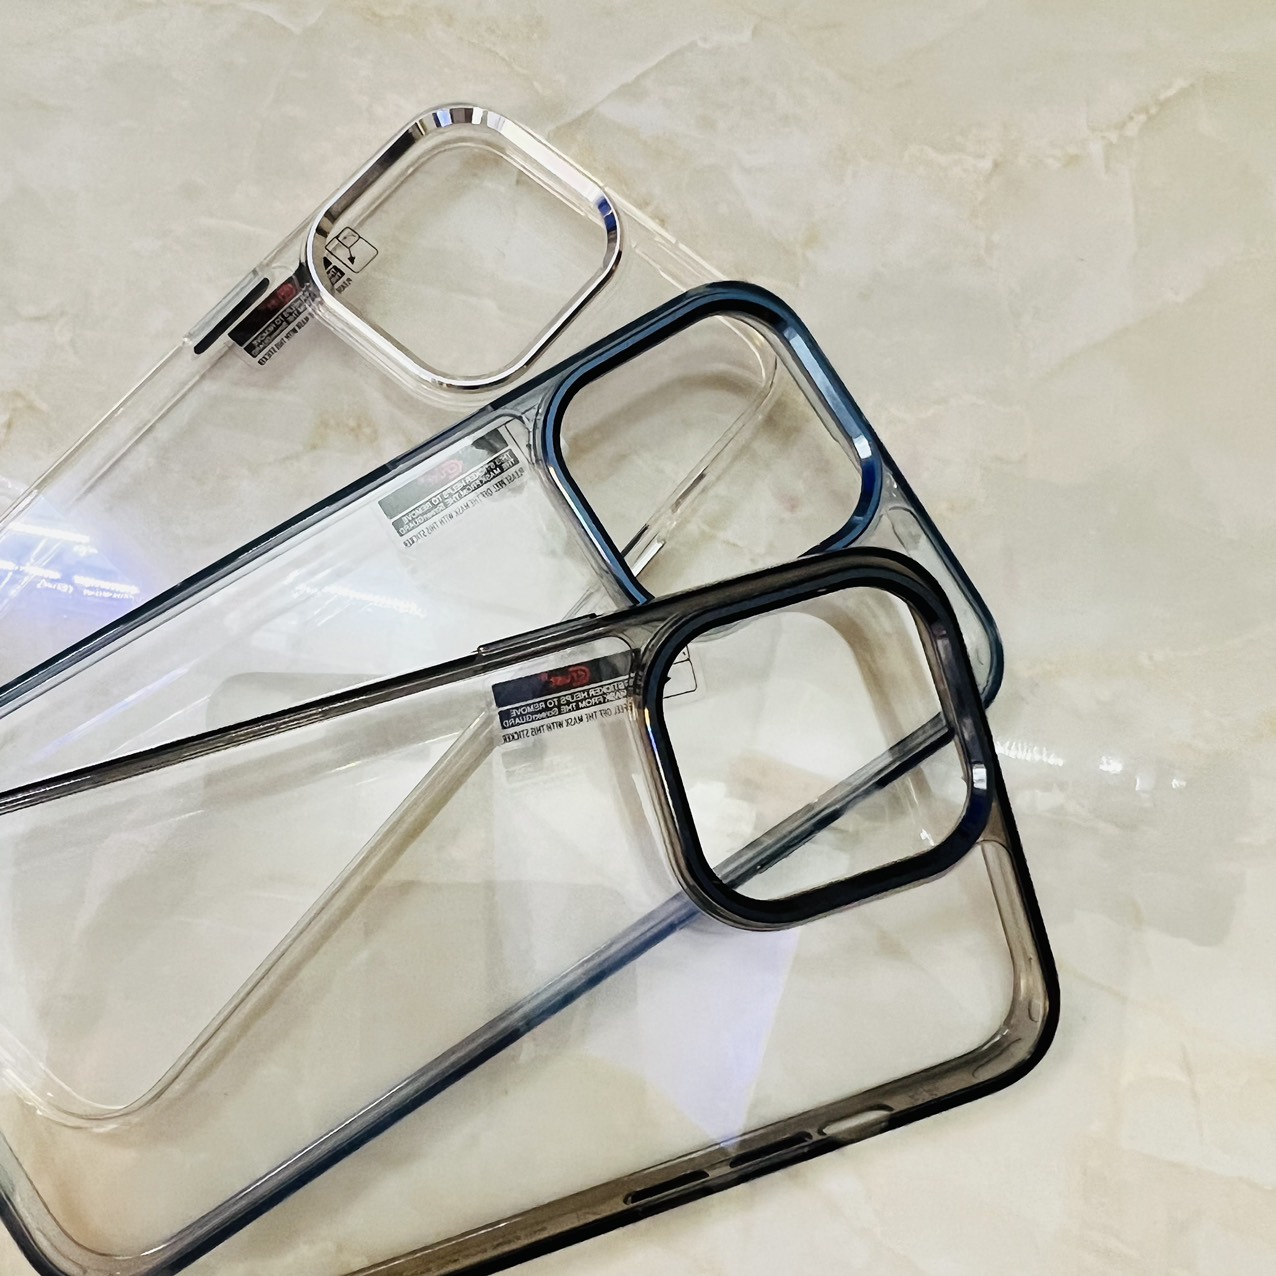 Ốp lưng cho iPhone 15 Pro Max Likgus K-Glass trong suốt- hàng chính hãng